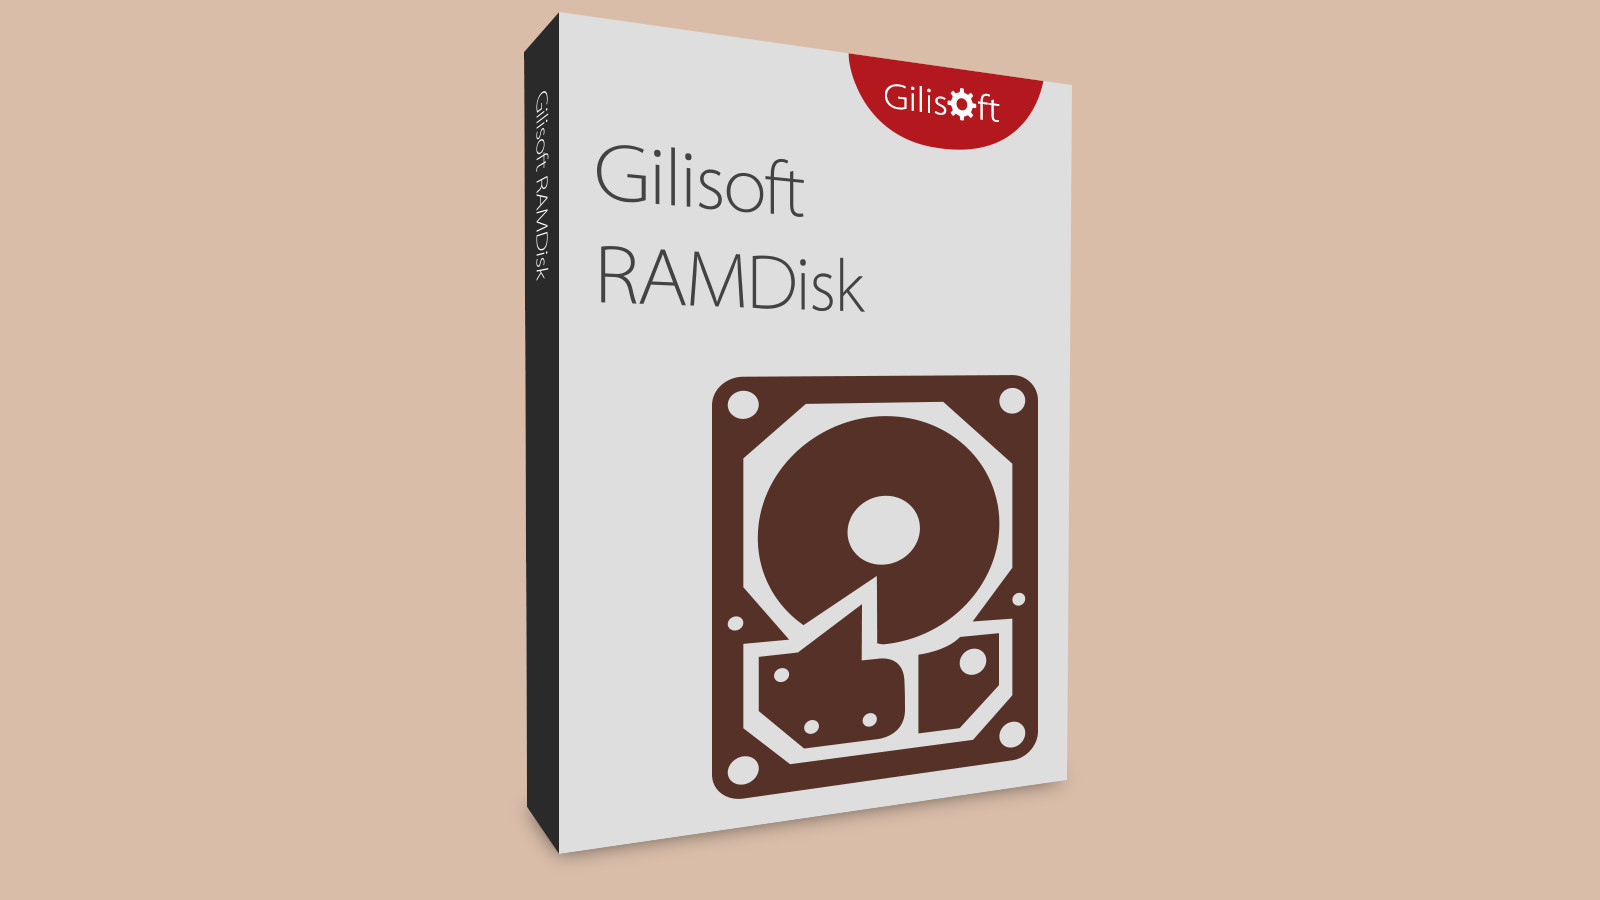 Gilisoft RAMDisk CD Key 15.54 $